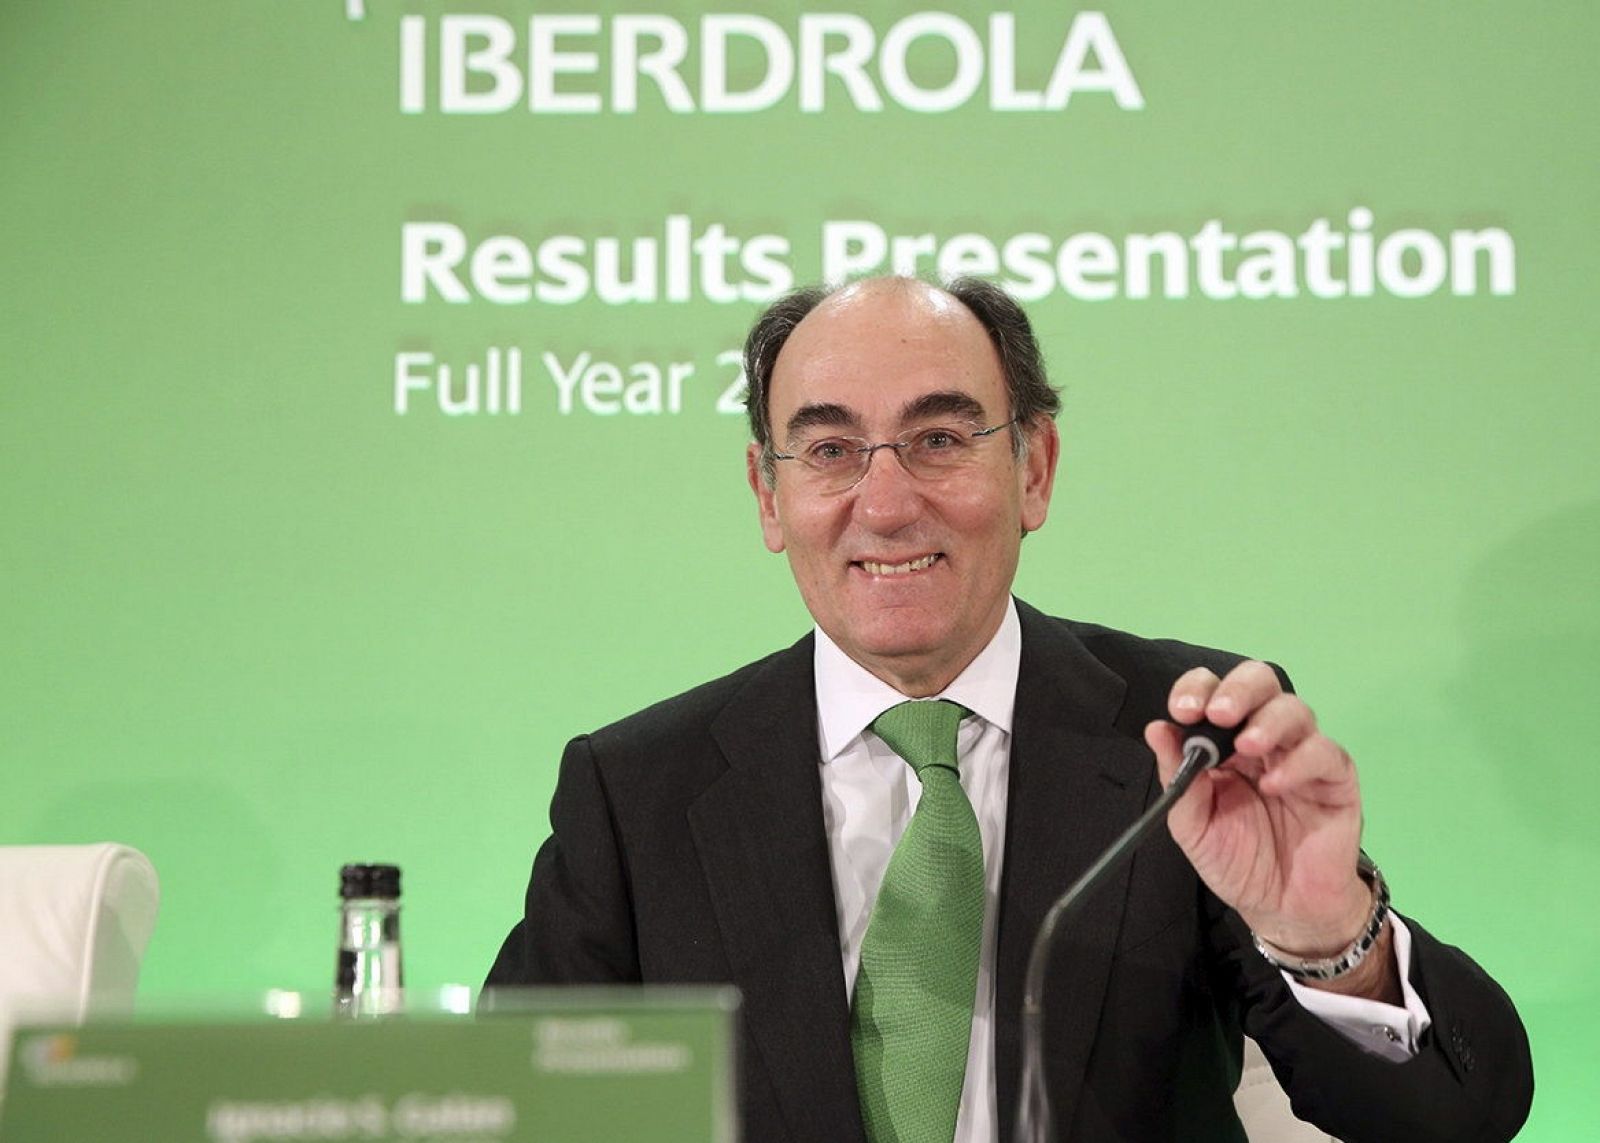 El presidente de Iberdrola, Ignacio Sánchez Galán, durante la conferencia con analistas para presentar los resultados del 2014